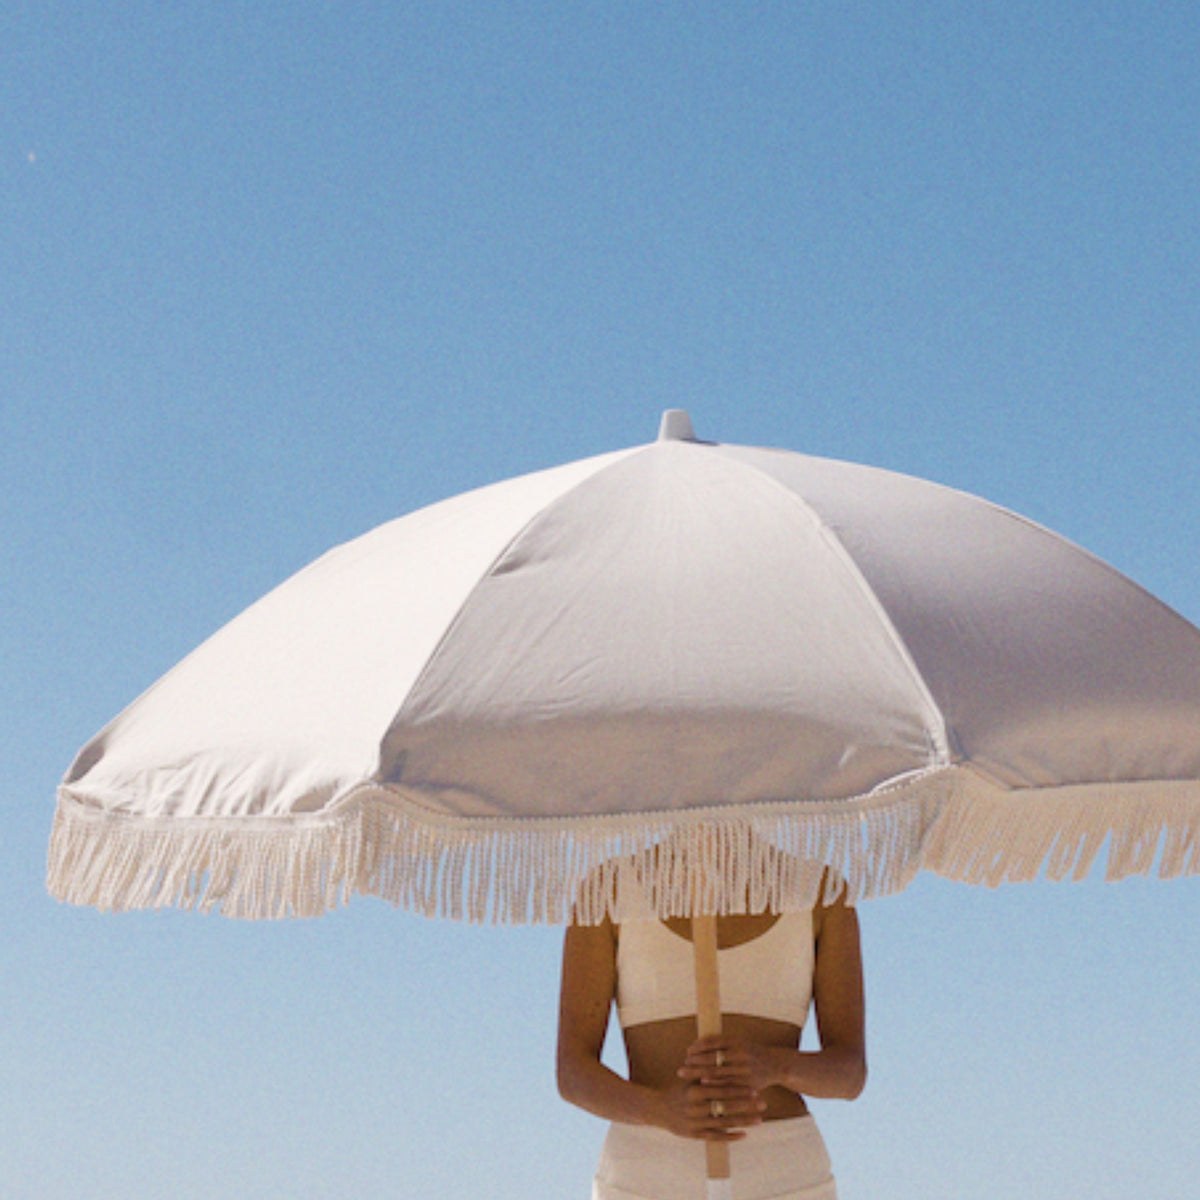 Dunes Beach Umbrella